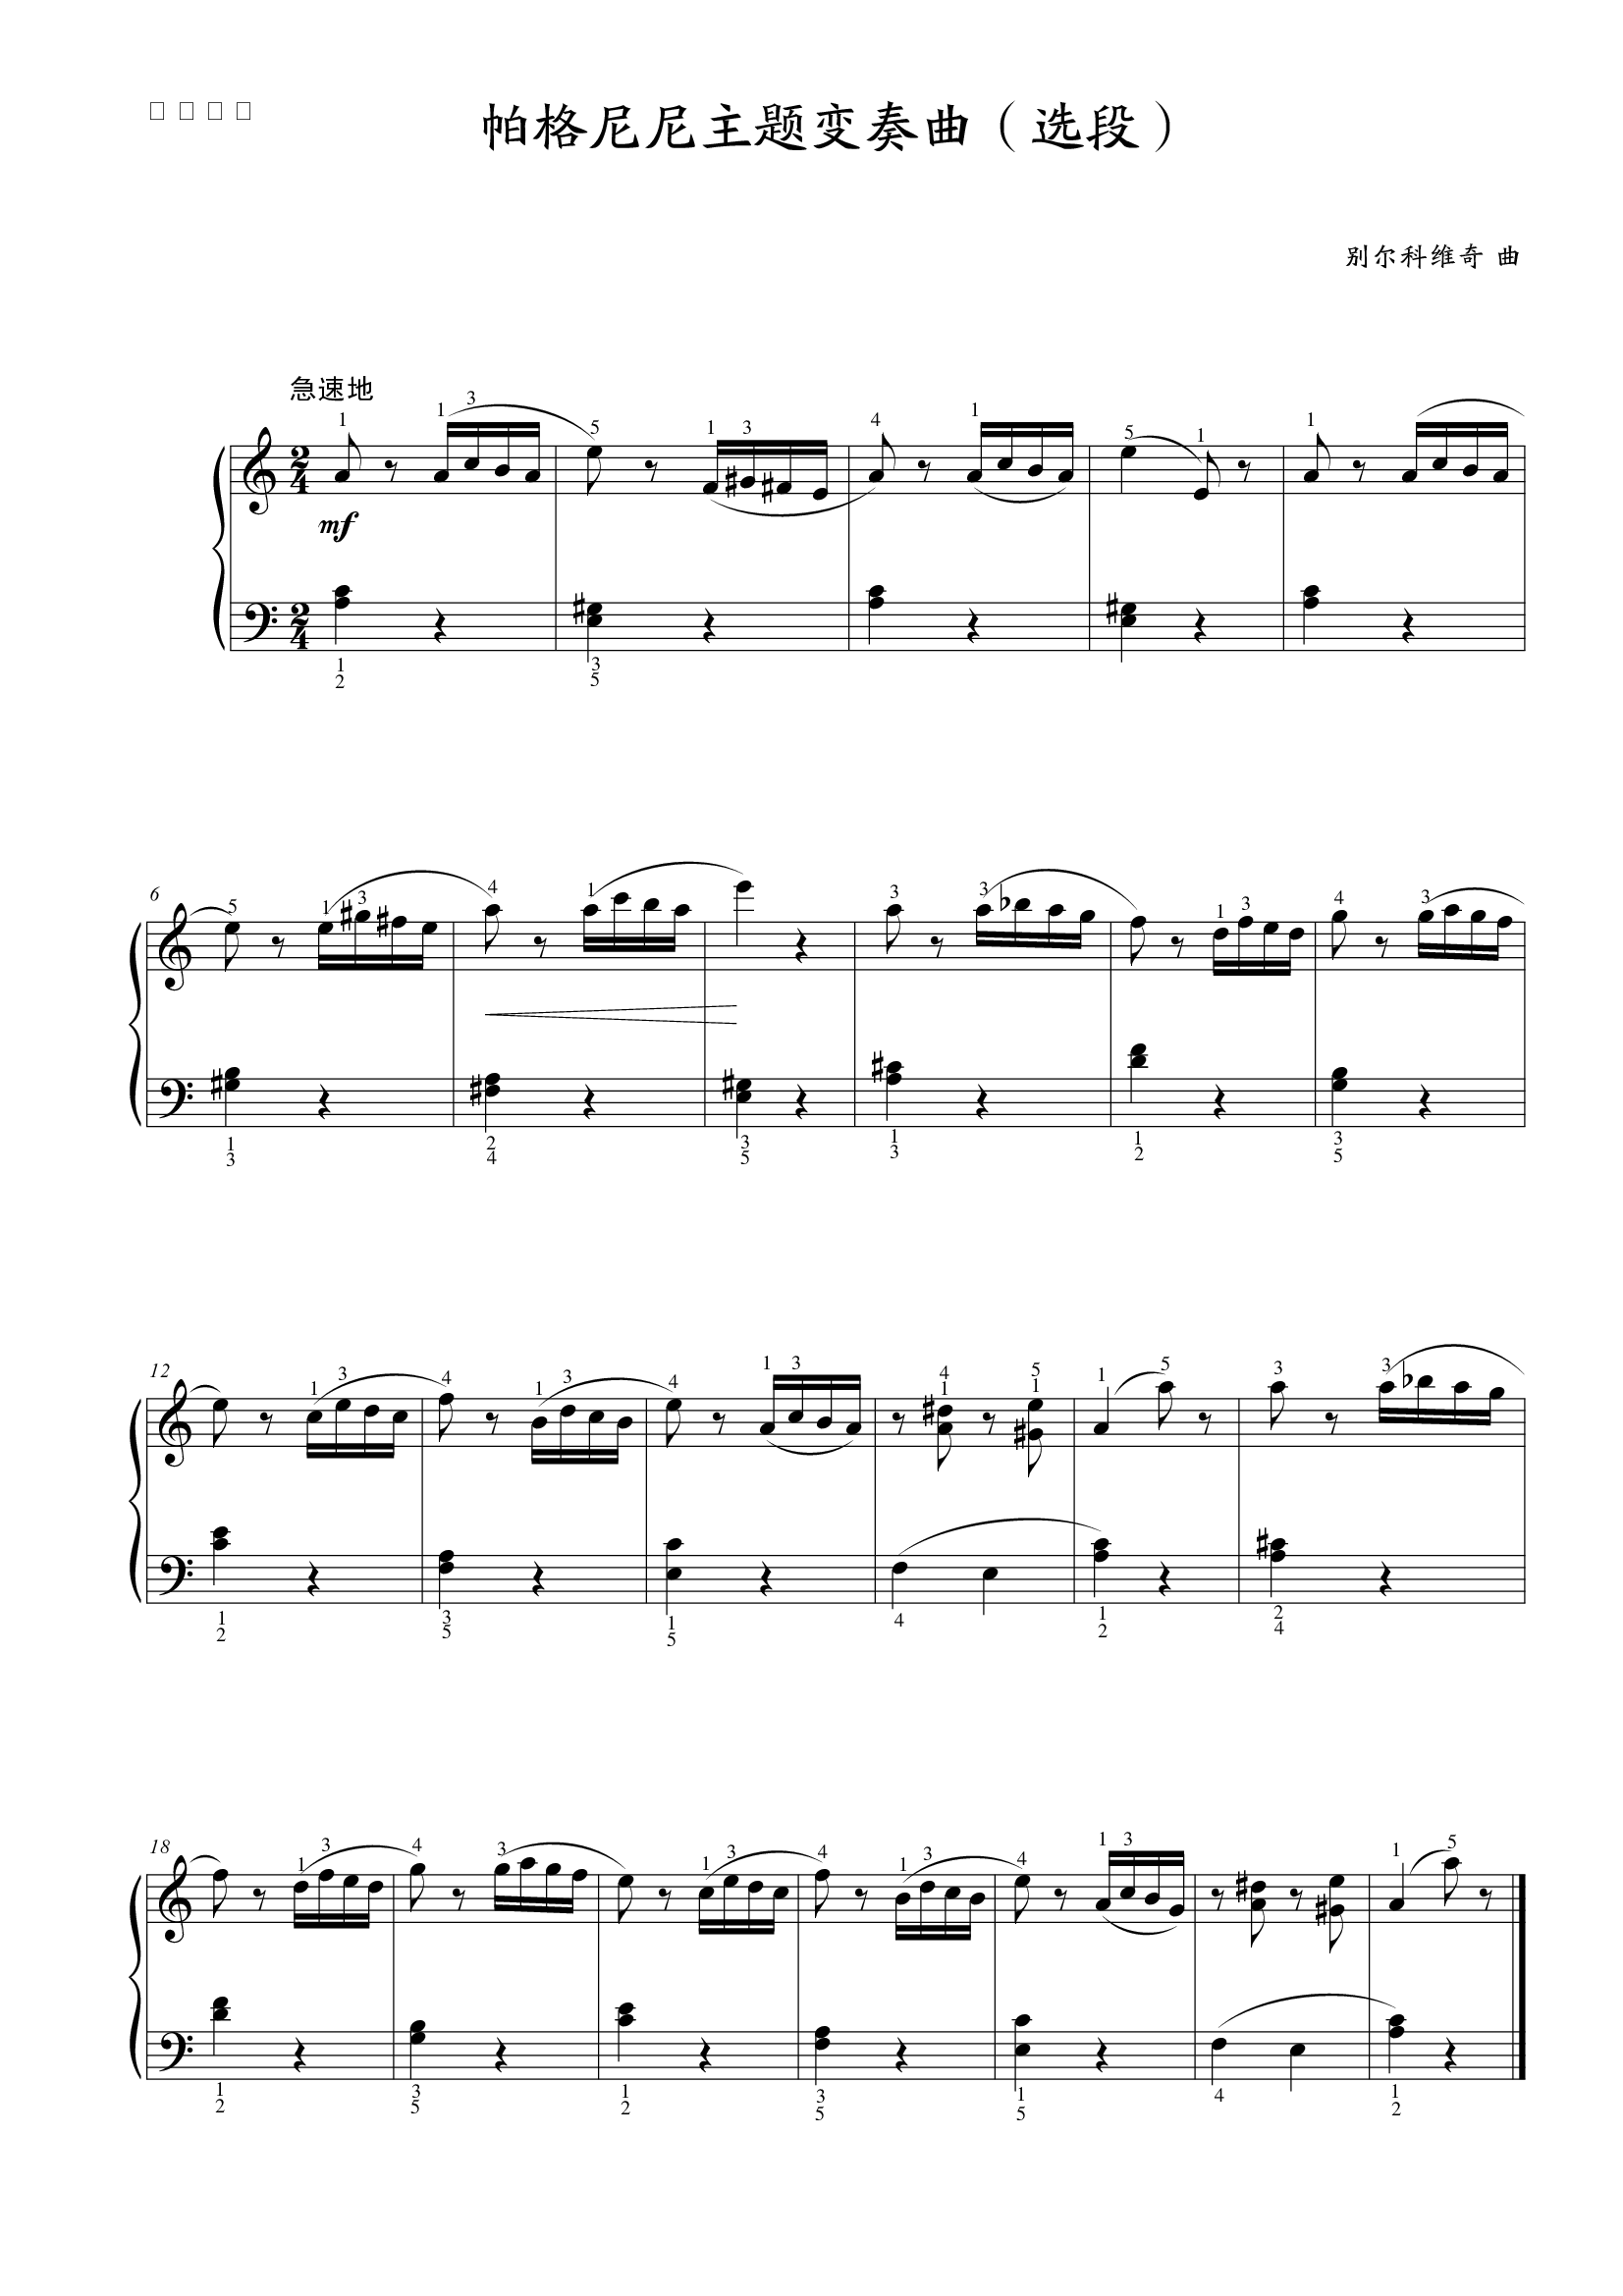 钢琴谱:第六级 帕格尼尼主题变奏曲(选段)1